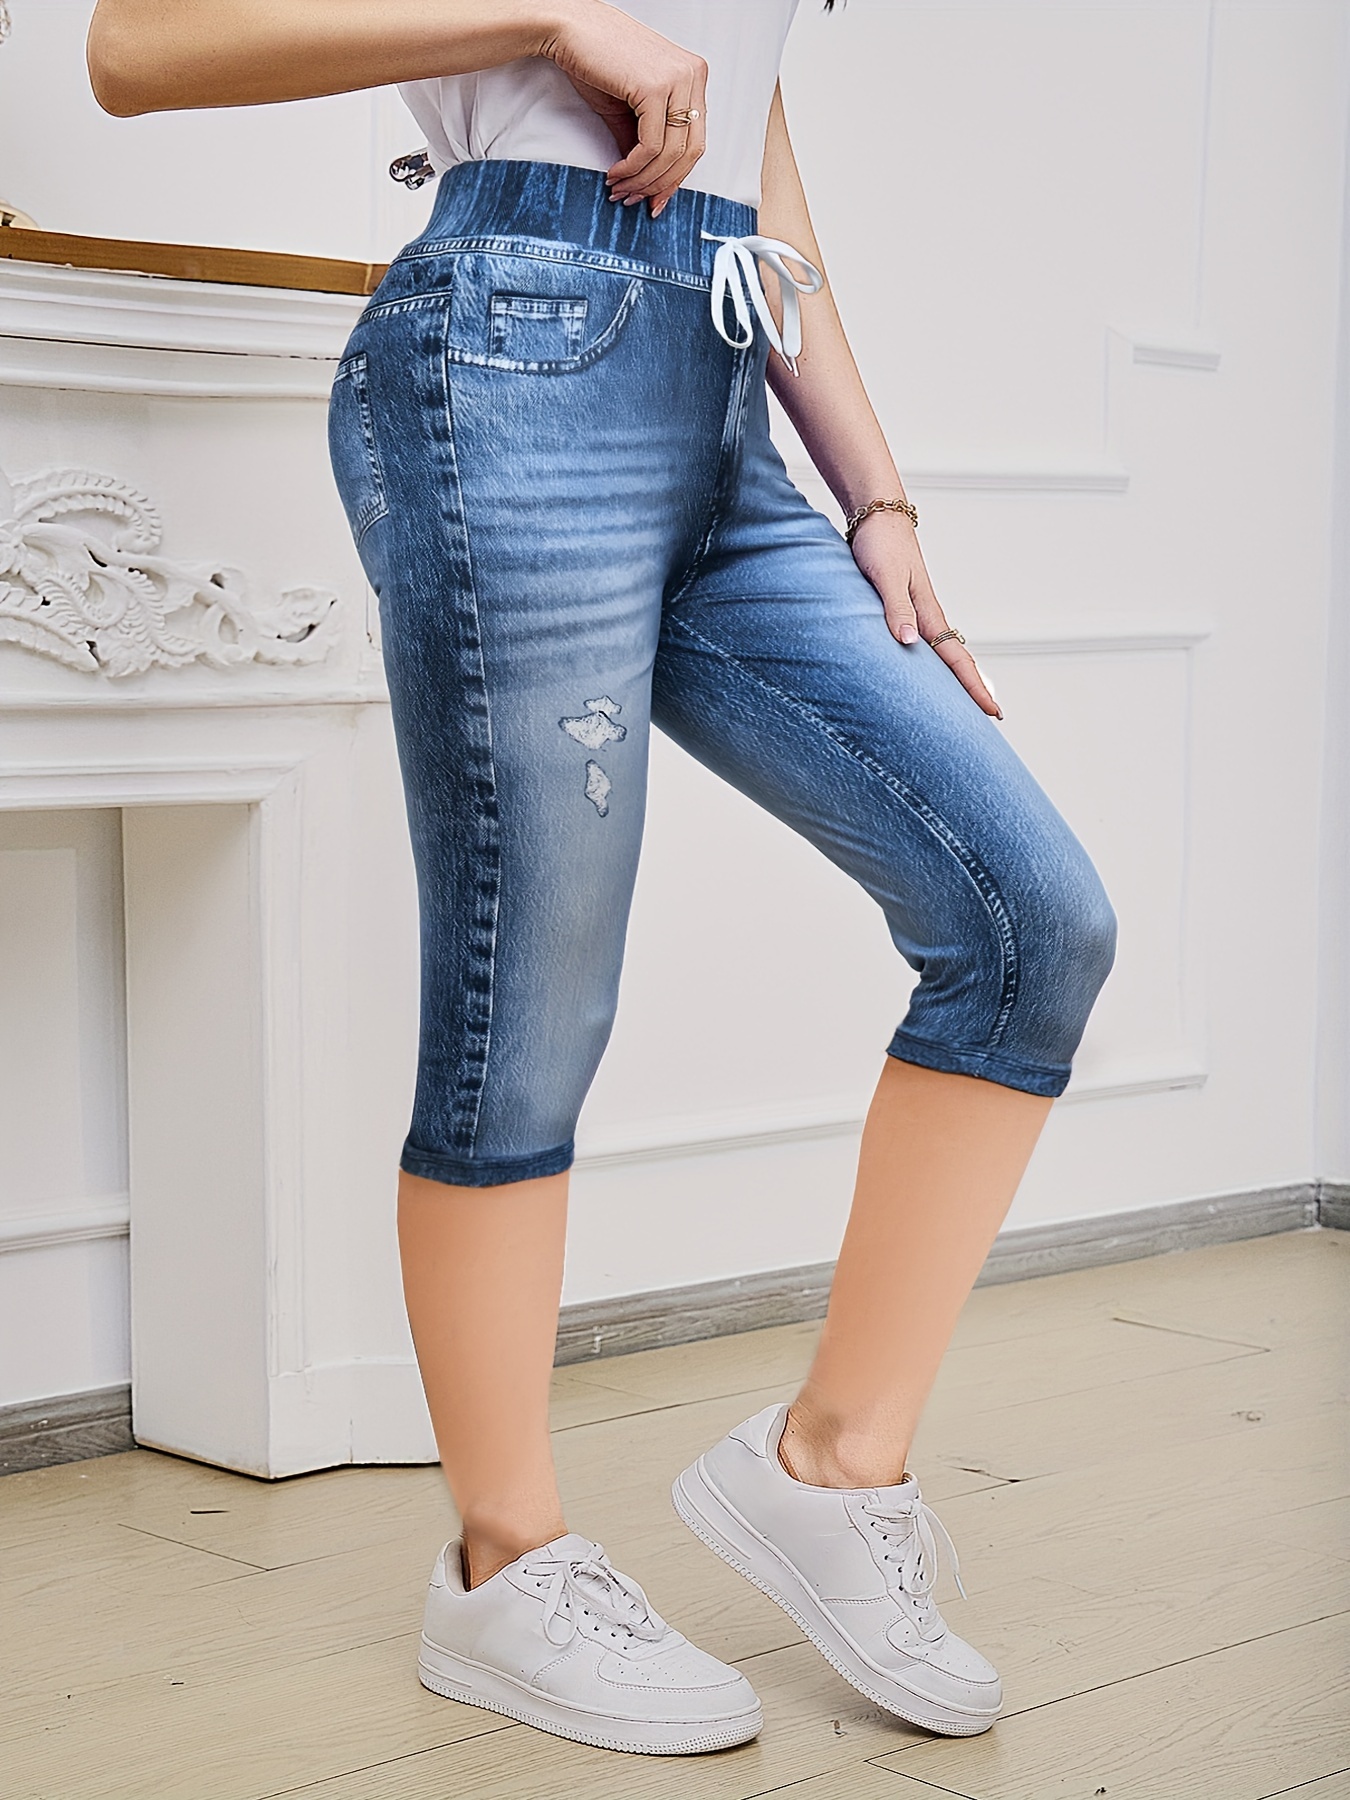 QUYUON Plus Size Womens Capris Fashion Plus Size Solid Button Zipper Casual  Pants Calf-Length Trousers Capris Jeans Stretch Female Capris Style Q42 